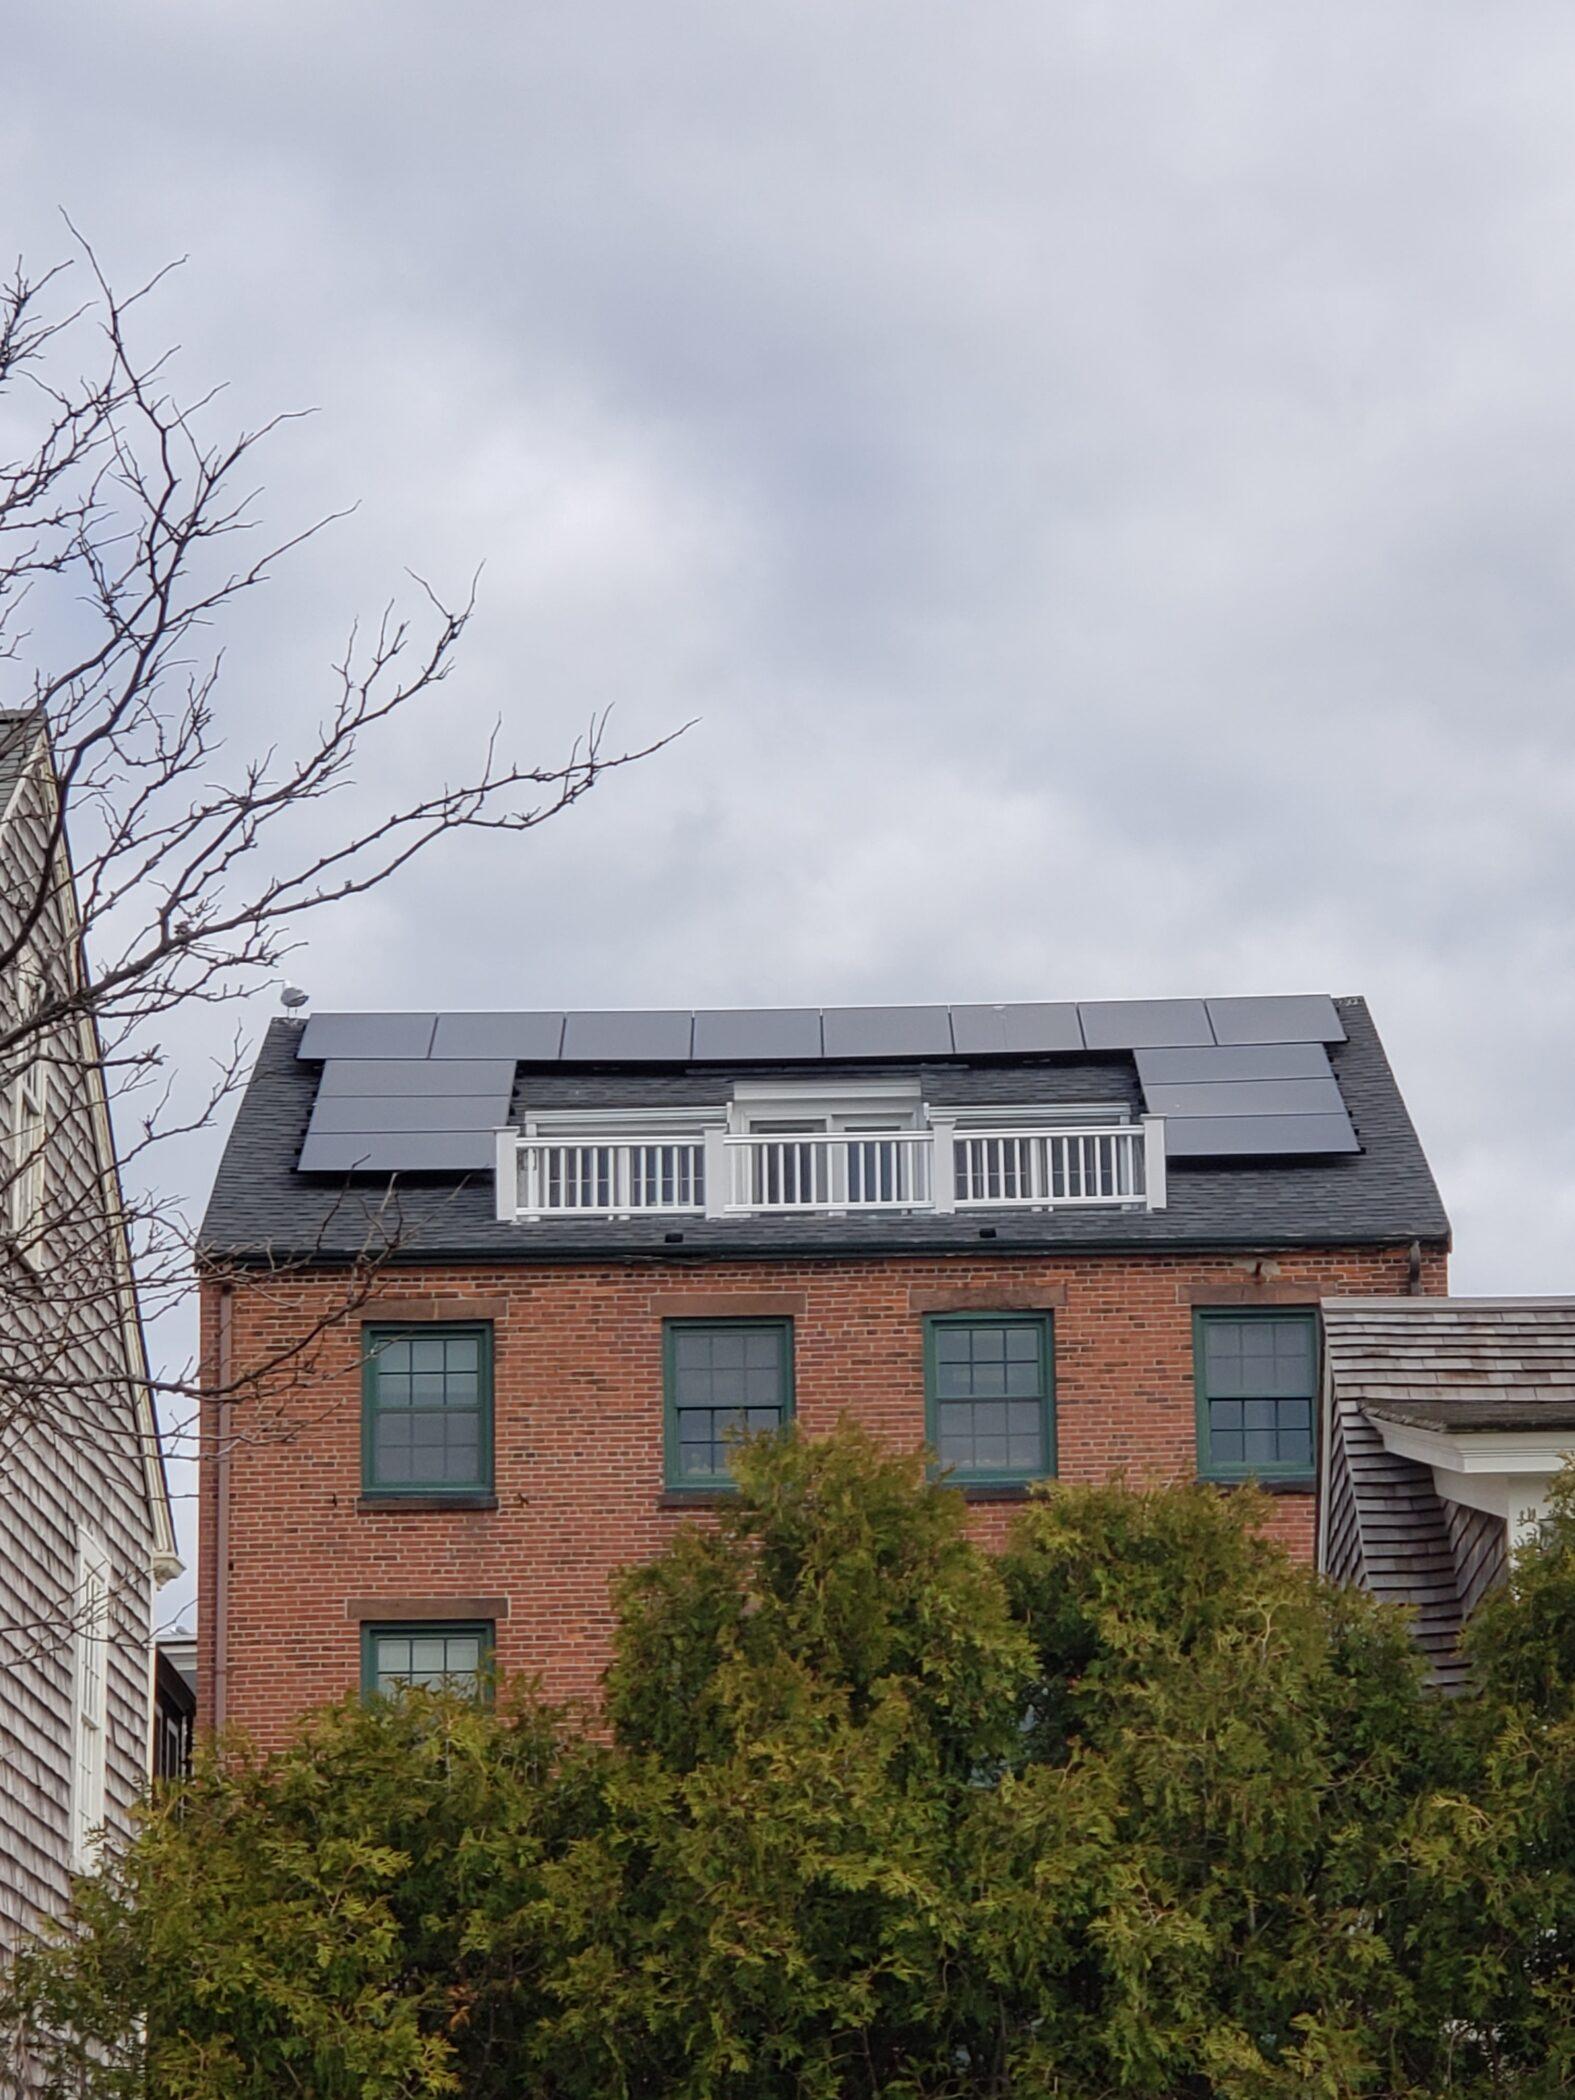 Instalación de paneles solares y pasos hacia una comunidad más ecológica.